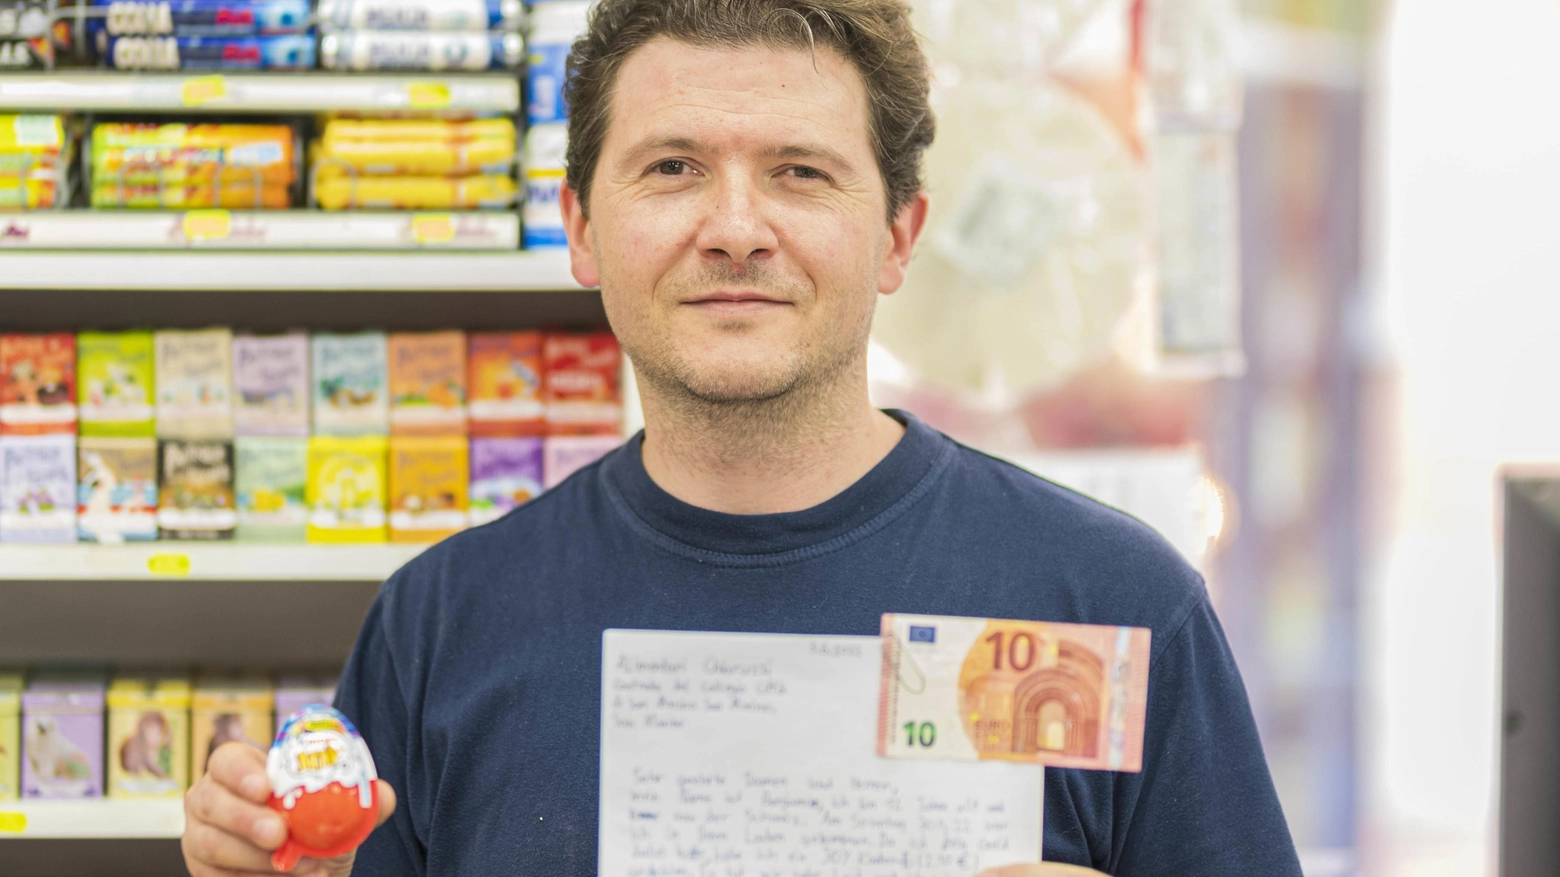 Danilo Chiaruzzi mostra la lettera di scuse ricevuta con i 10 euro per l’ovetto rubato